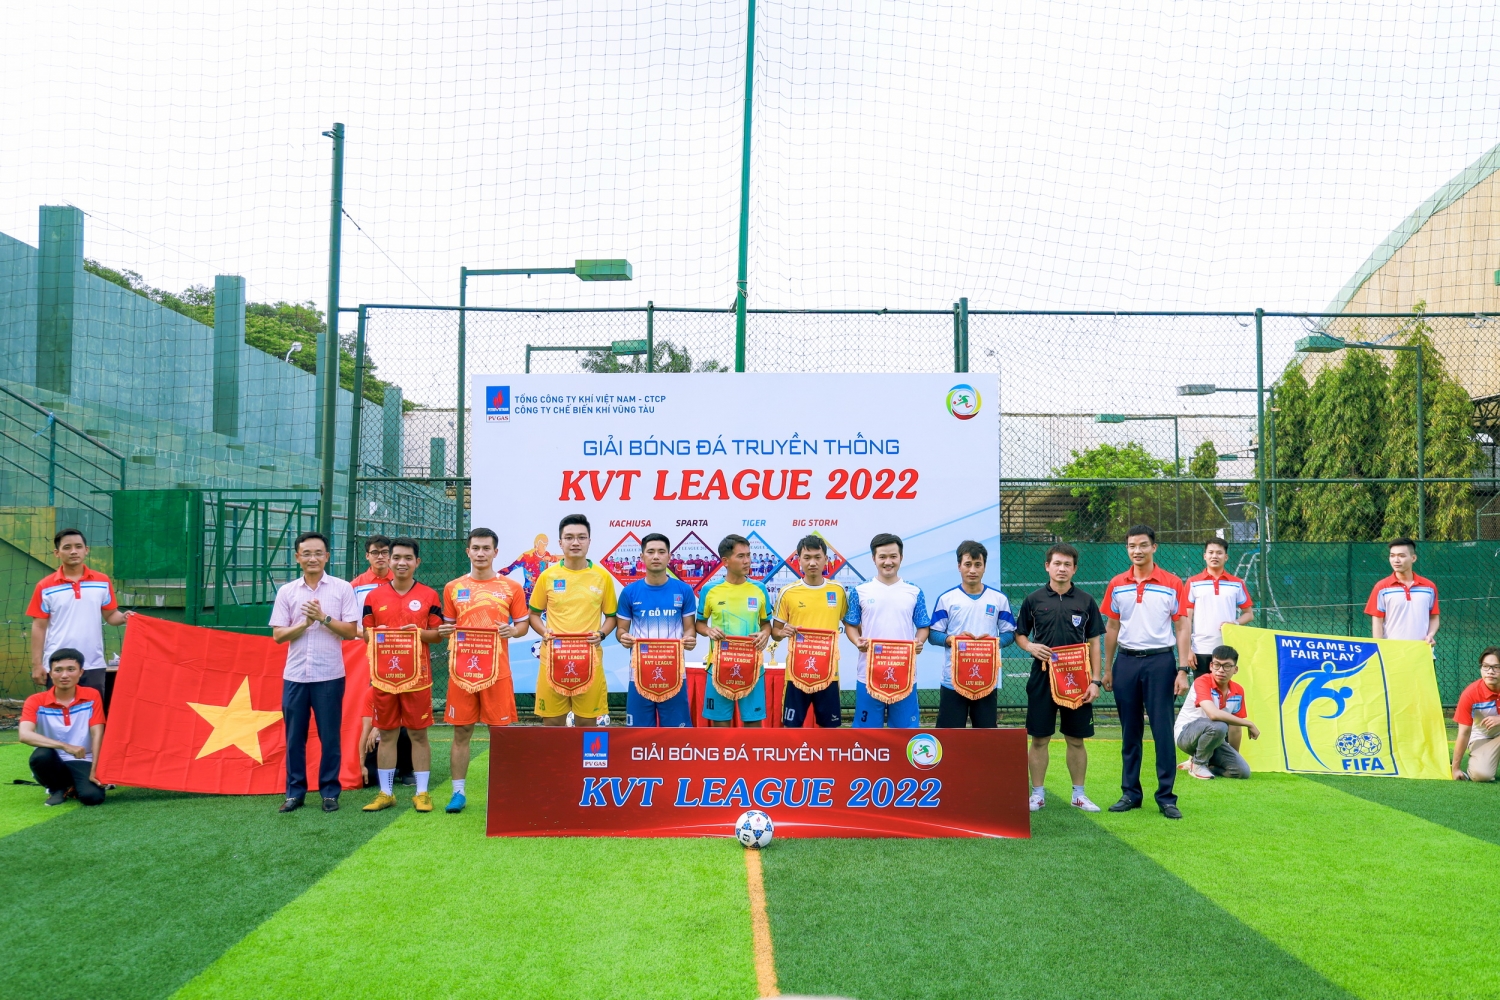 Khai mạc Giải bóng đá KVT League 2022 – Giải truyền thống của Công ty Chế biến Khí Vũng Tàu